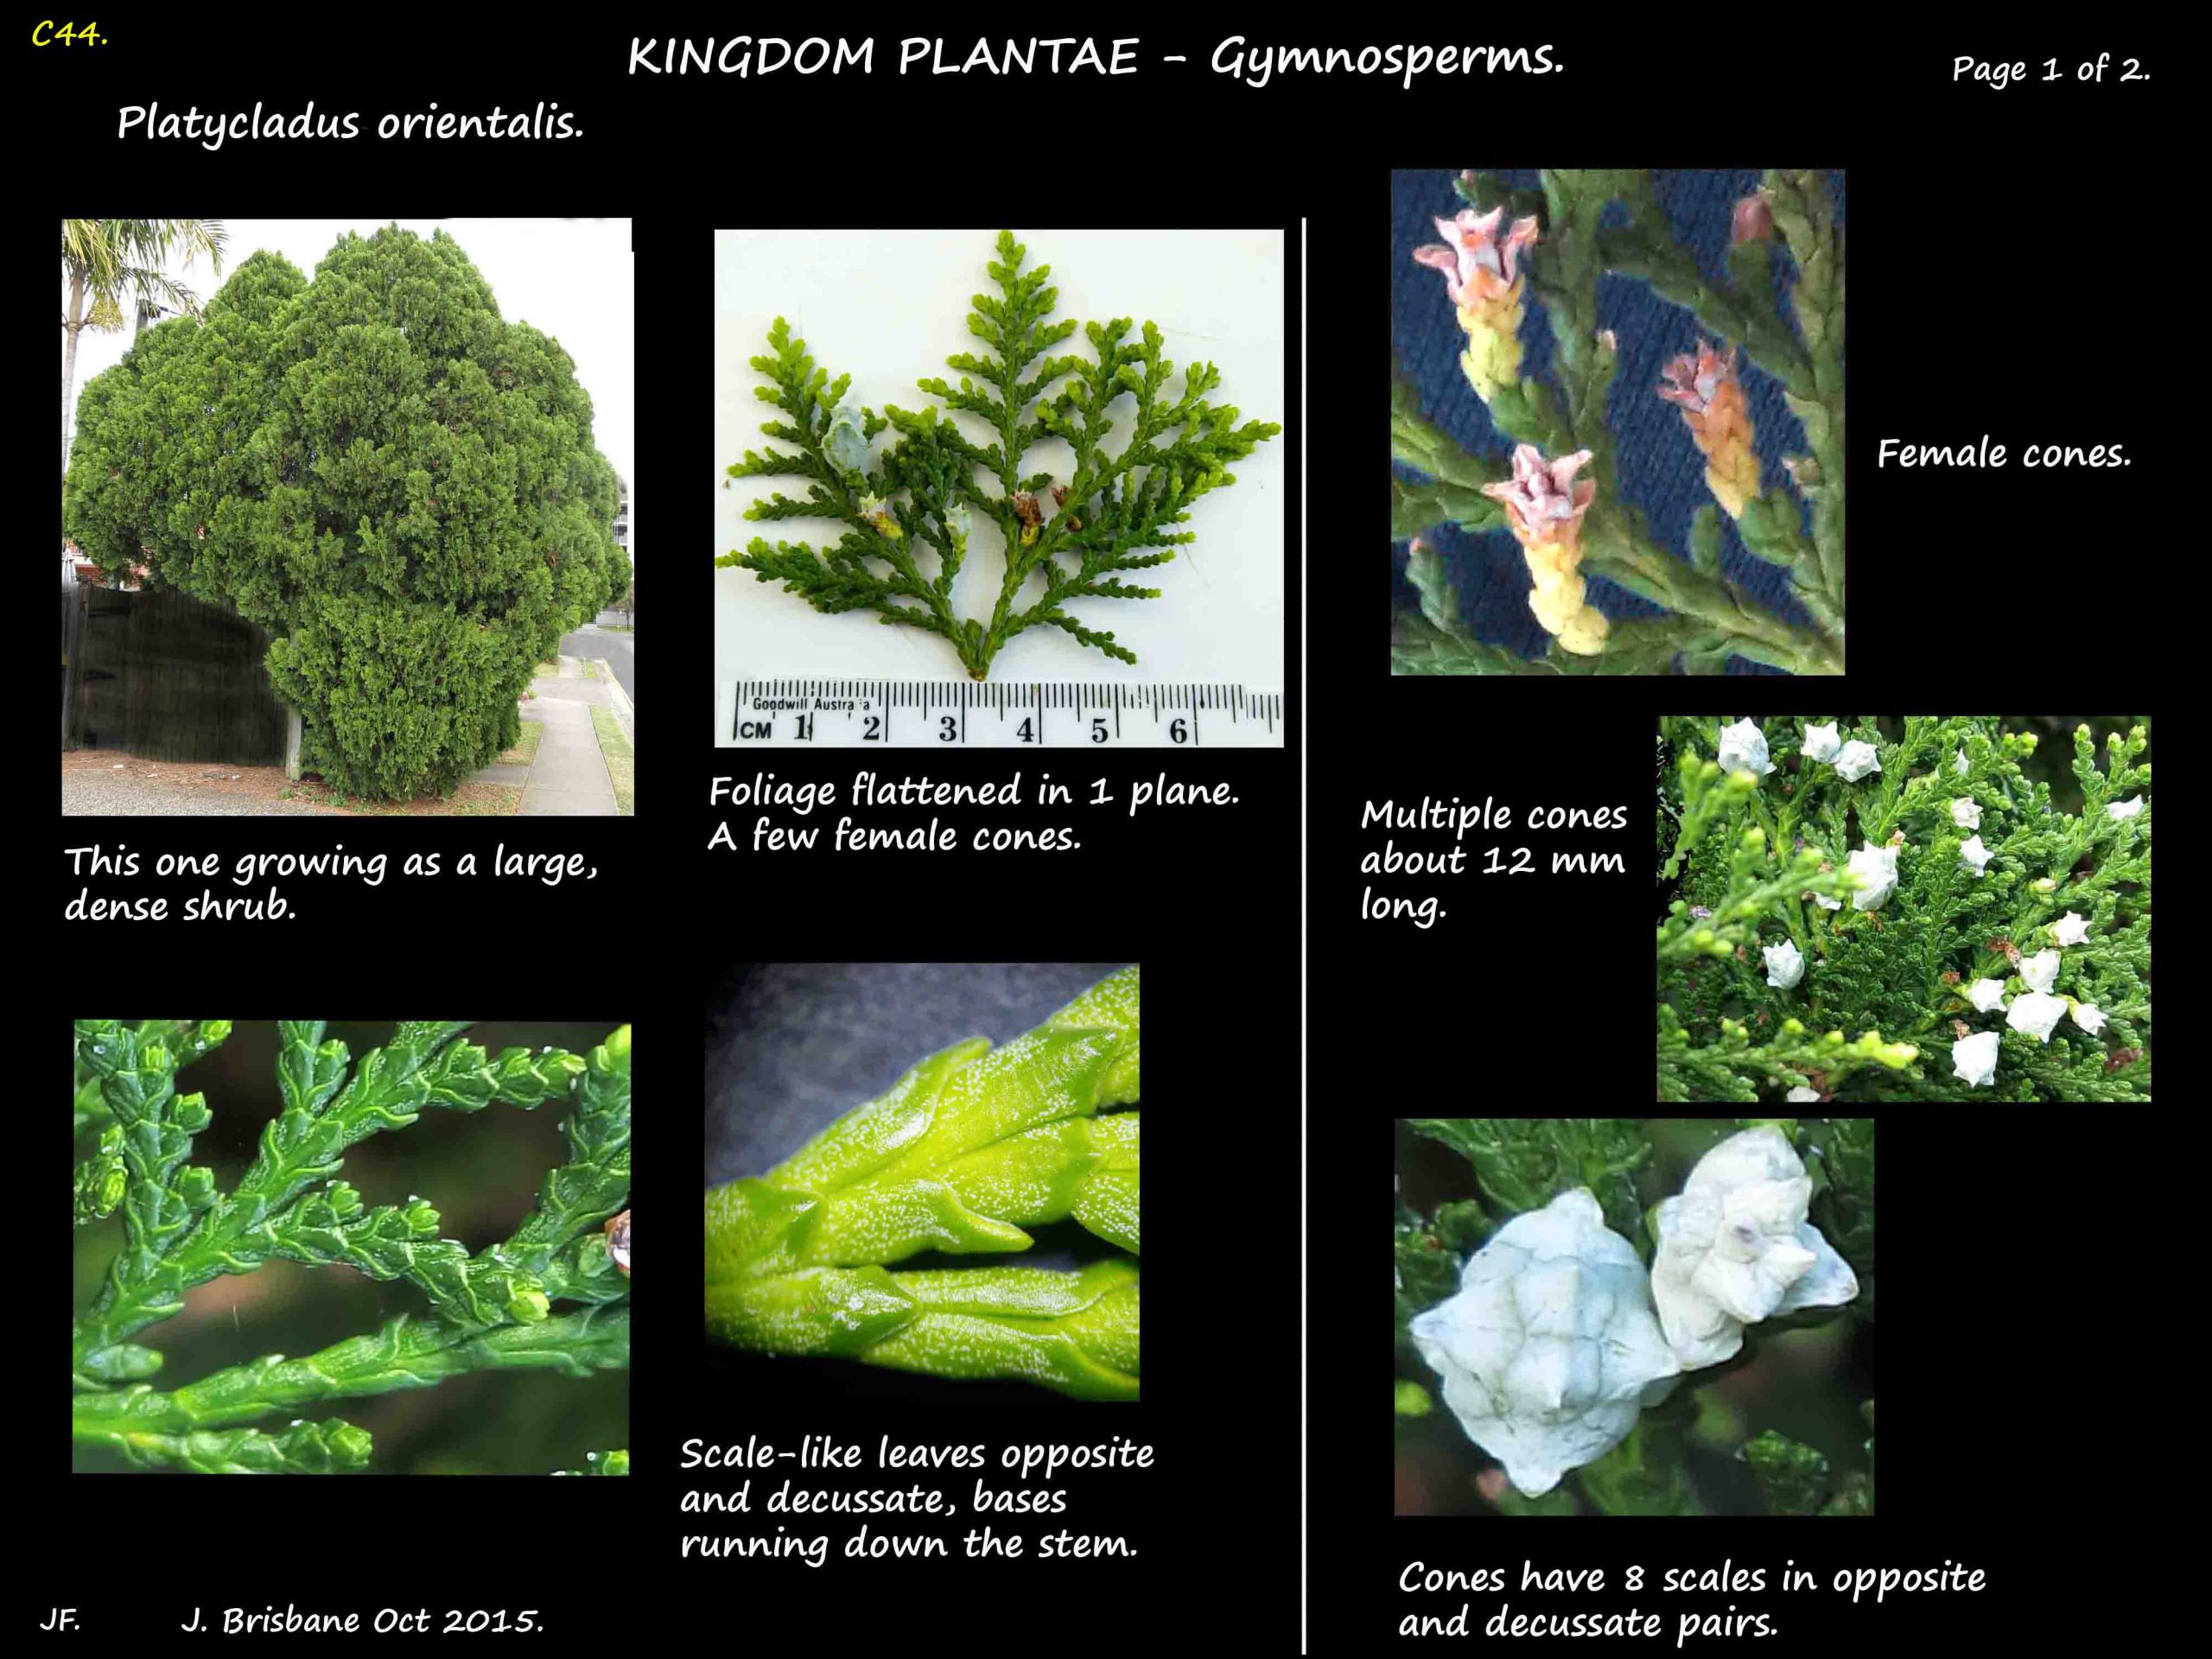 5 Platycladus shrub & leaves